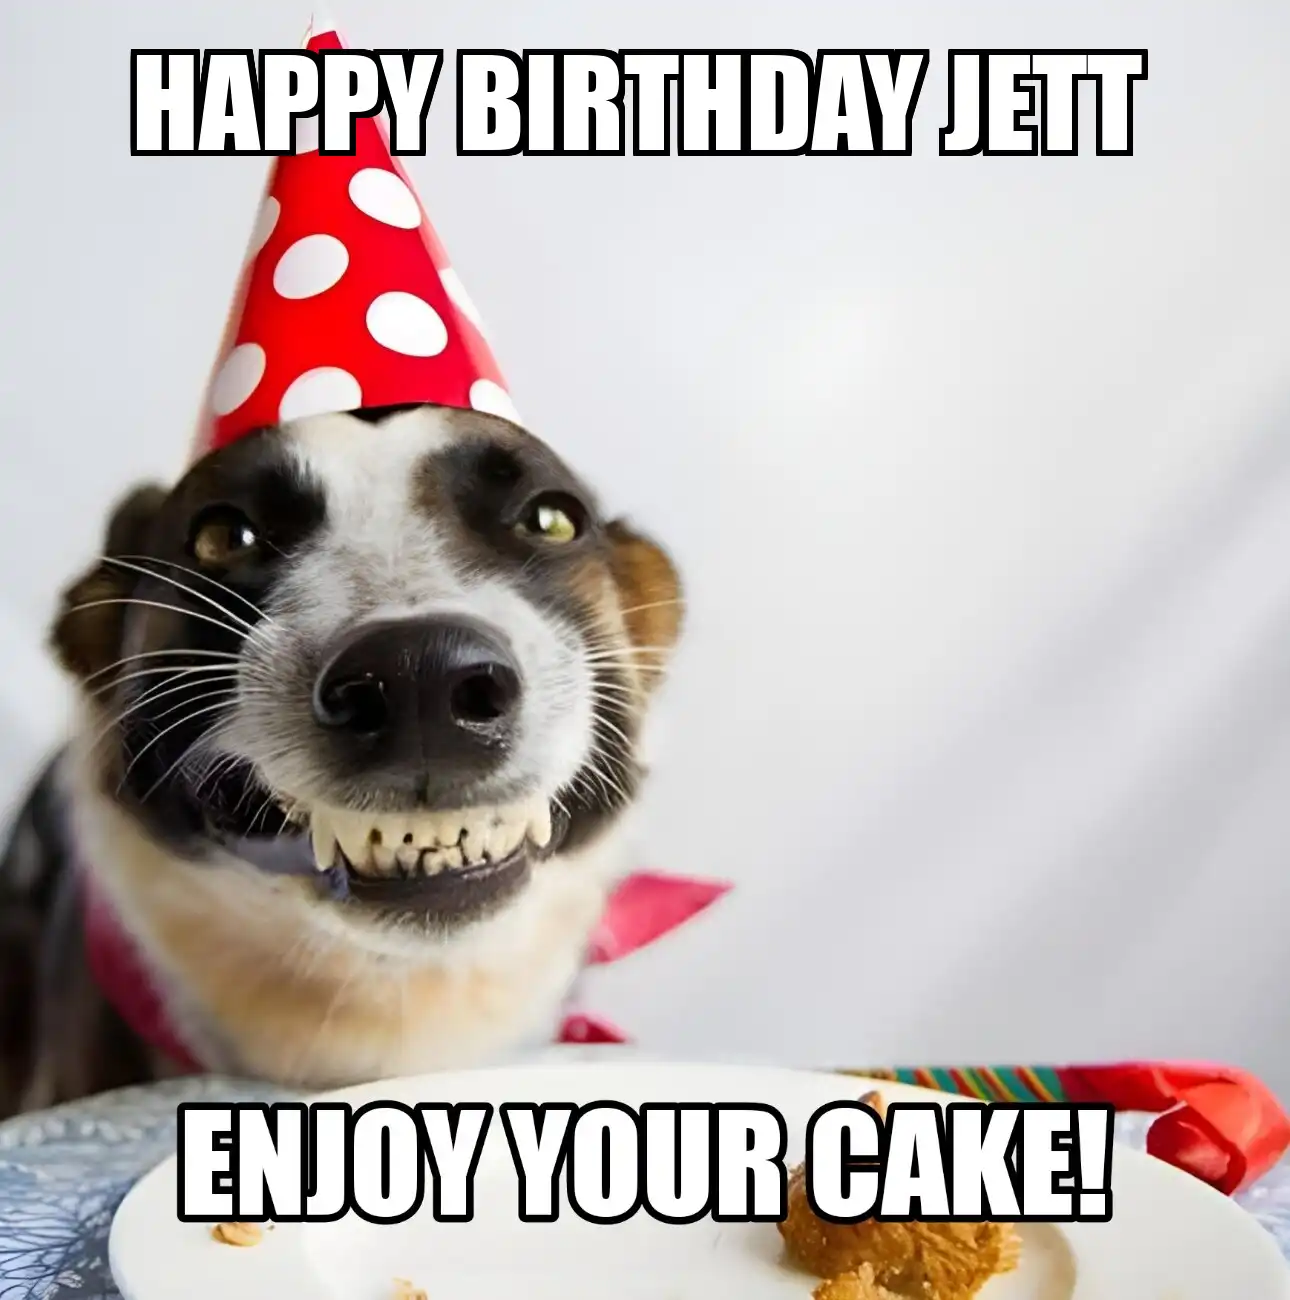 Happy Birthday Jett Enjoy Your Cake Dog Meme